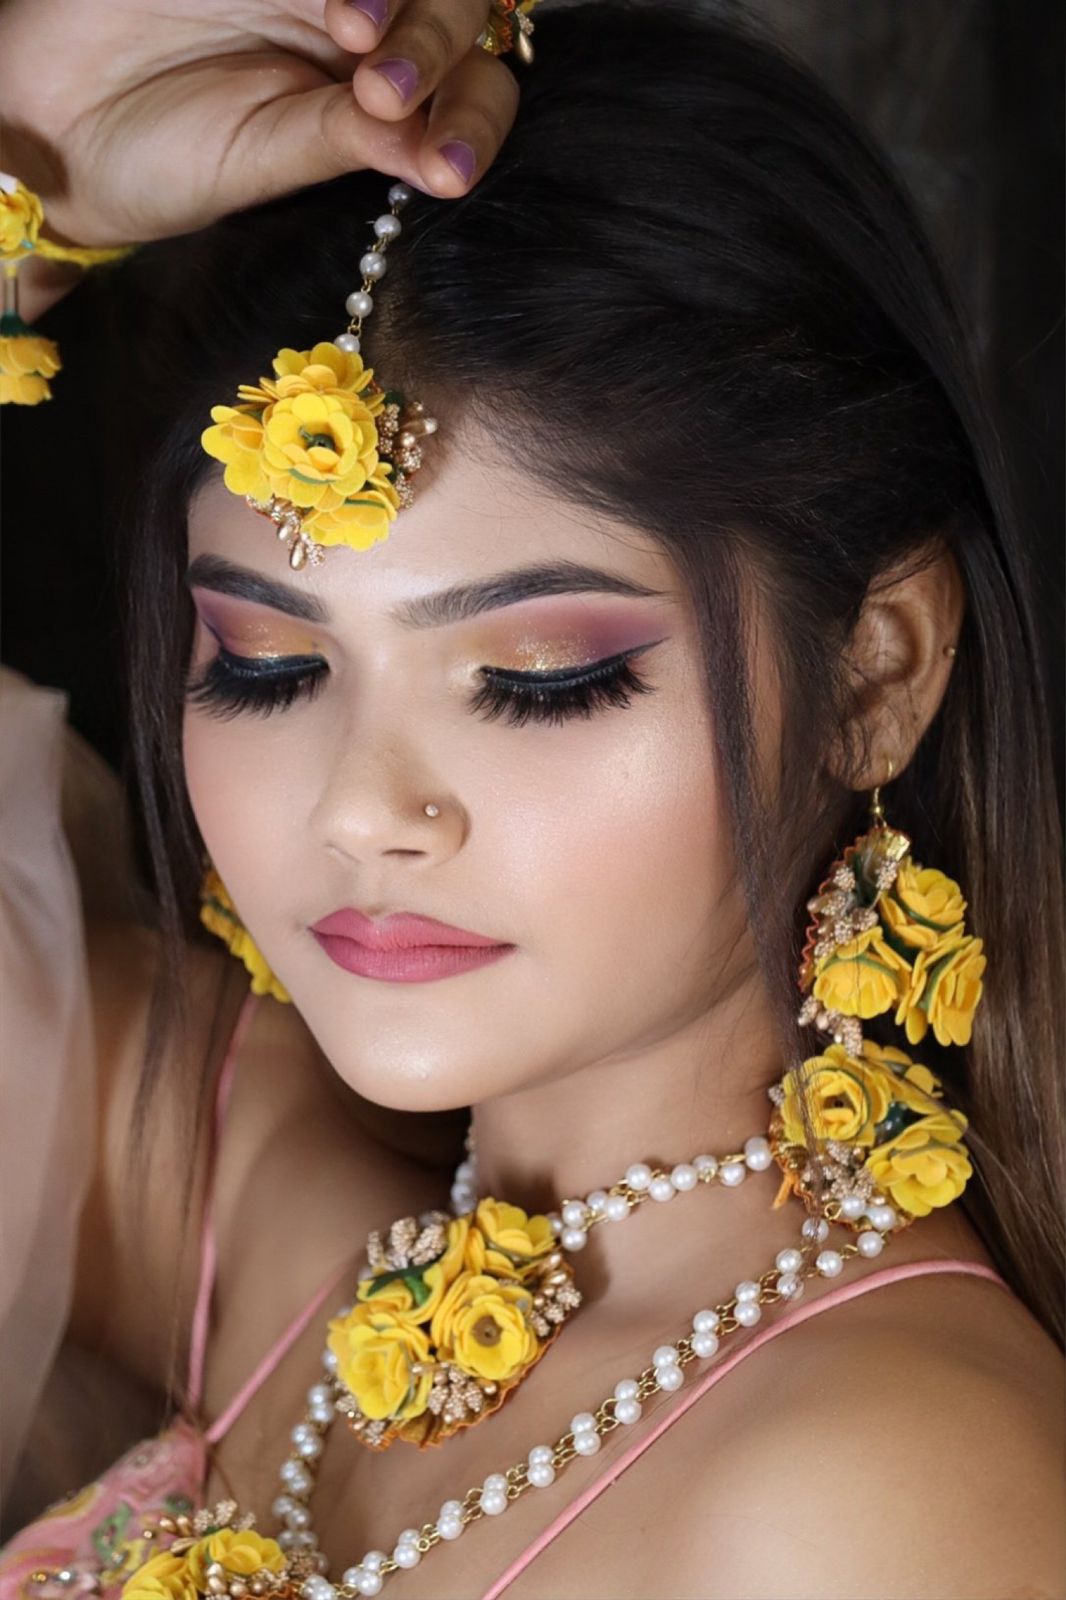 pam-makeovers-makeup-artist-delhi-ncr